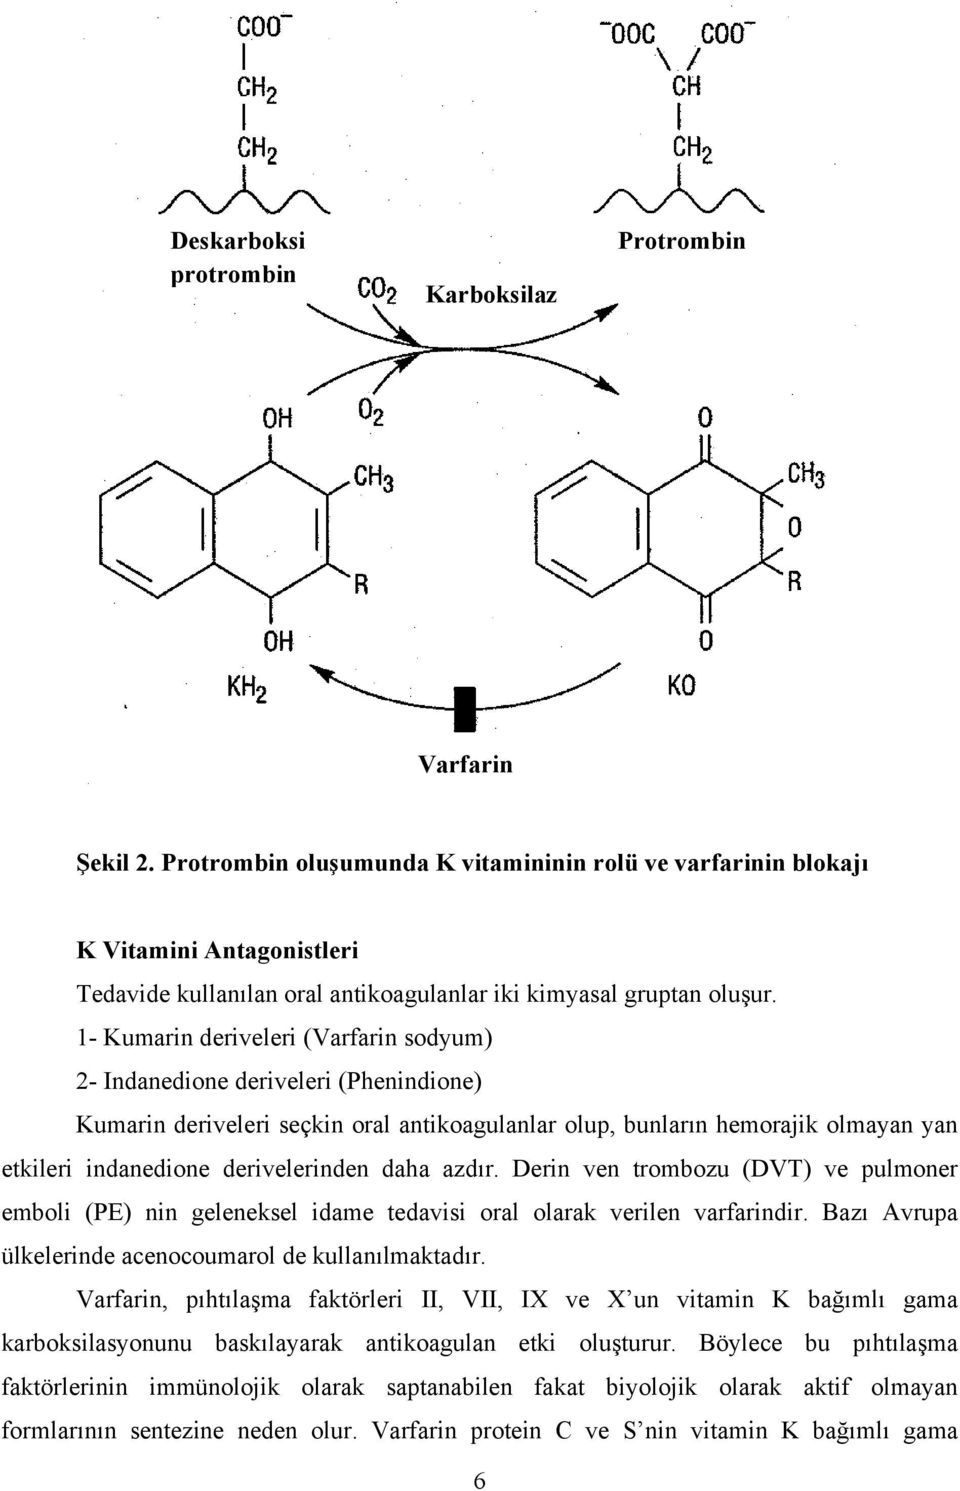 1- Kumarin deriveleri (Varfarin sodyum) 2- Indanedione deriveleri (Phenindione) Kumarin deriveleri seçkin oral antikoagulanlar olup, bunların hemorajik olmayan yan etkileri indanedione derivelerinden